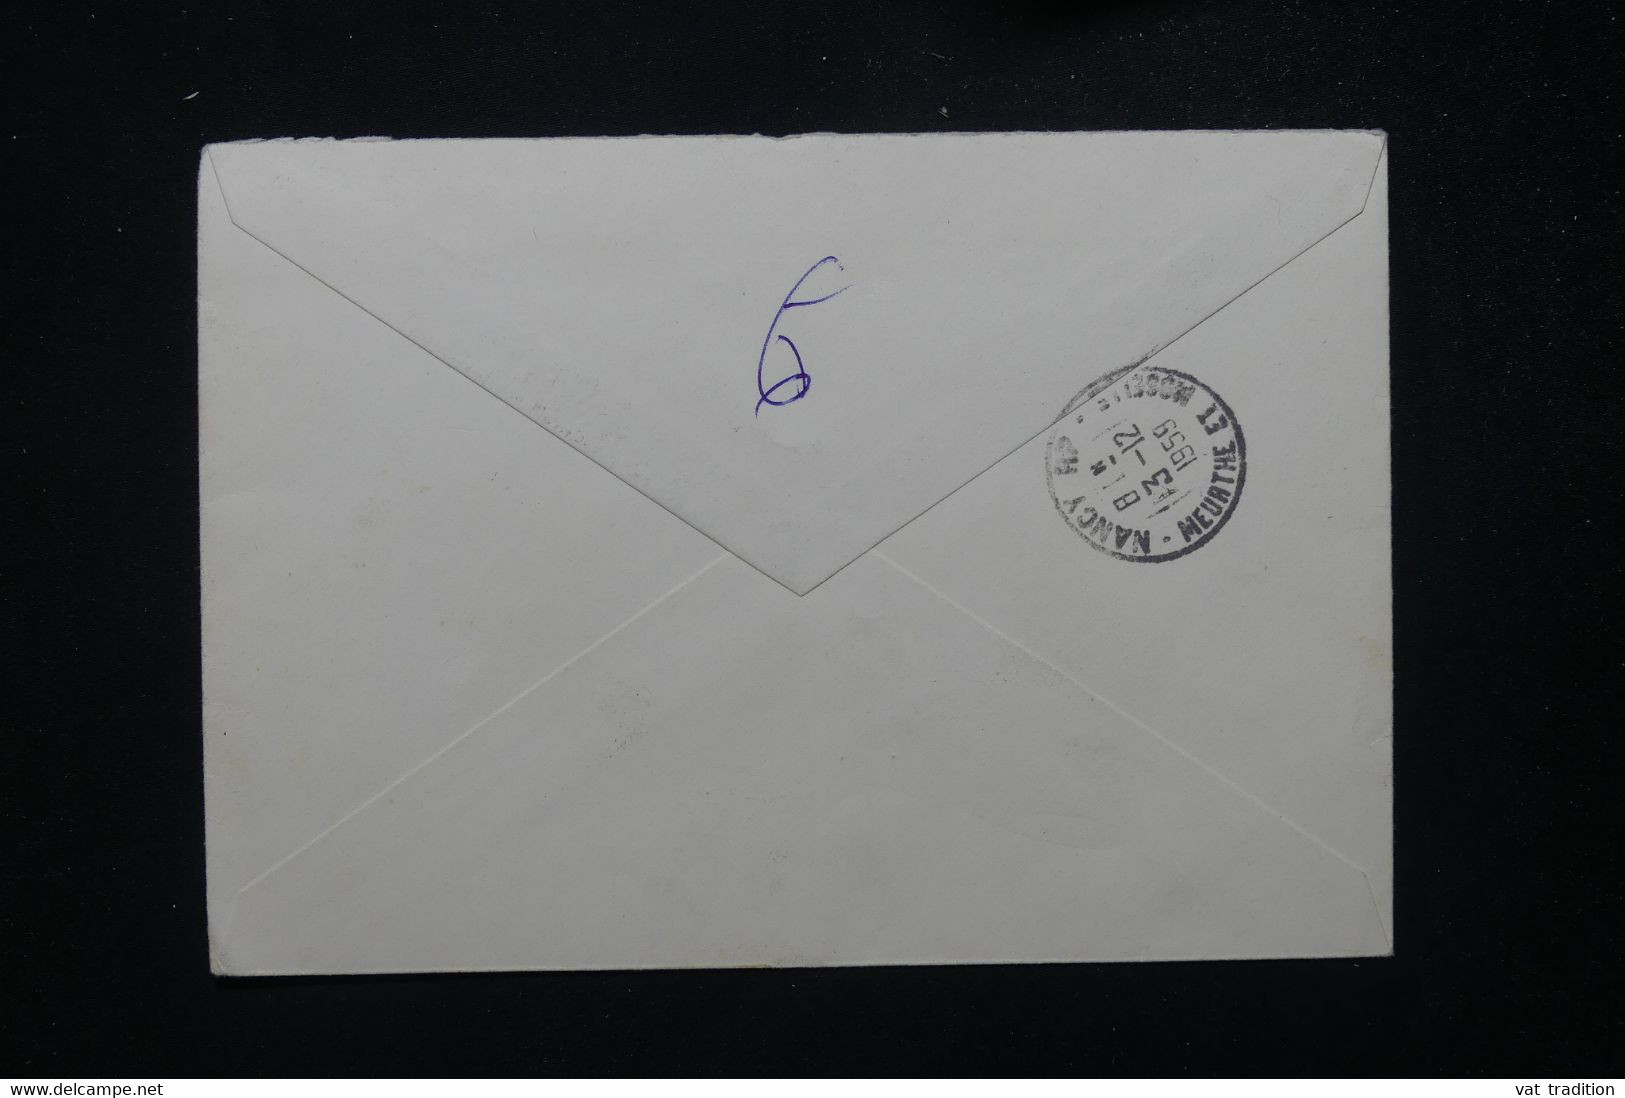 LIECHTENSTEIN - Enveloppe En Recommandé De Vaduz Pour La France En 1959 - L 81556 - Lettres & Documents